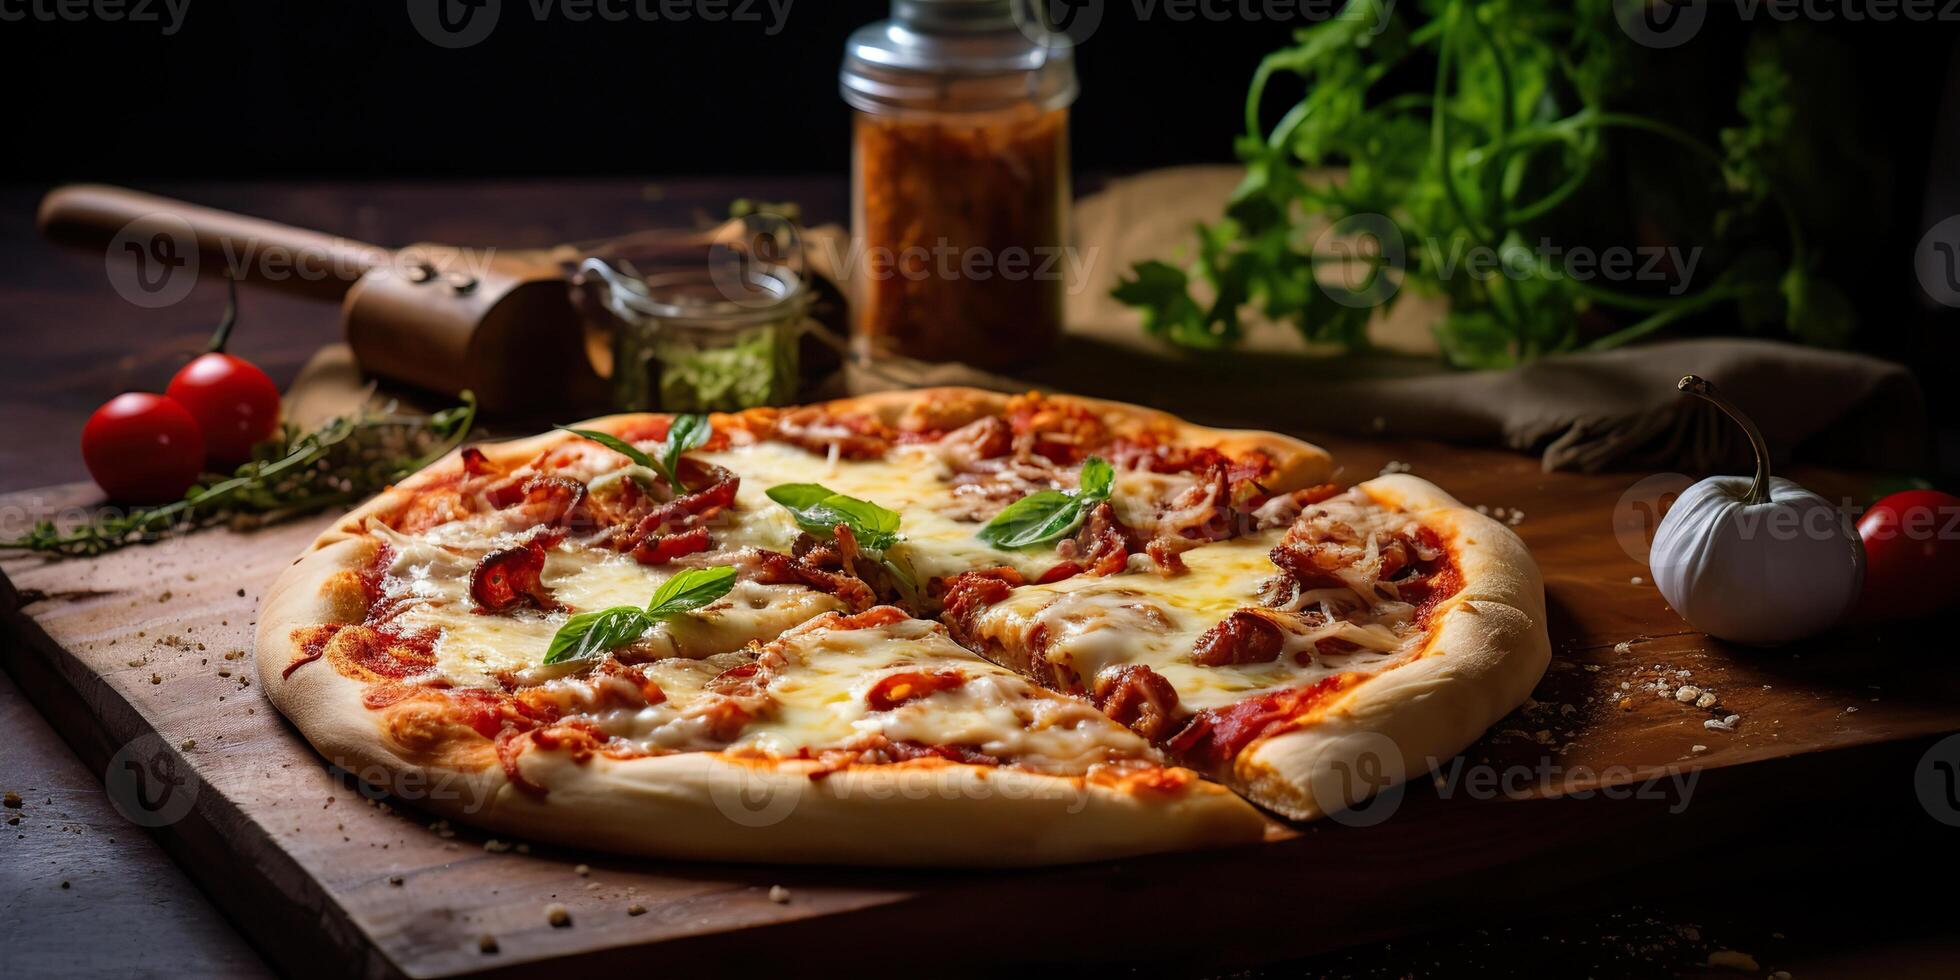 färsk bakad gott pizza med kött och grönsaker och örter på middag tabell. måltid mat restaurang bakgrund scen foto